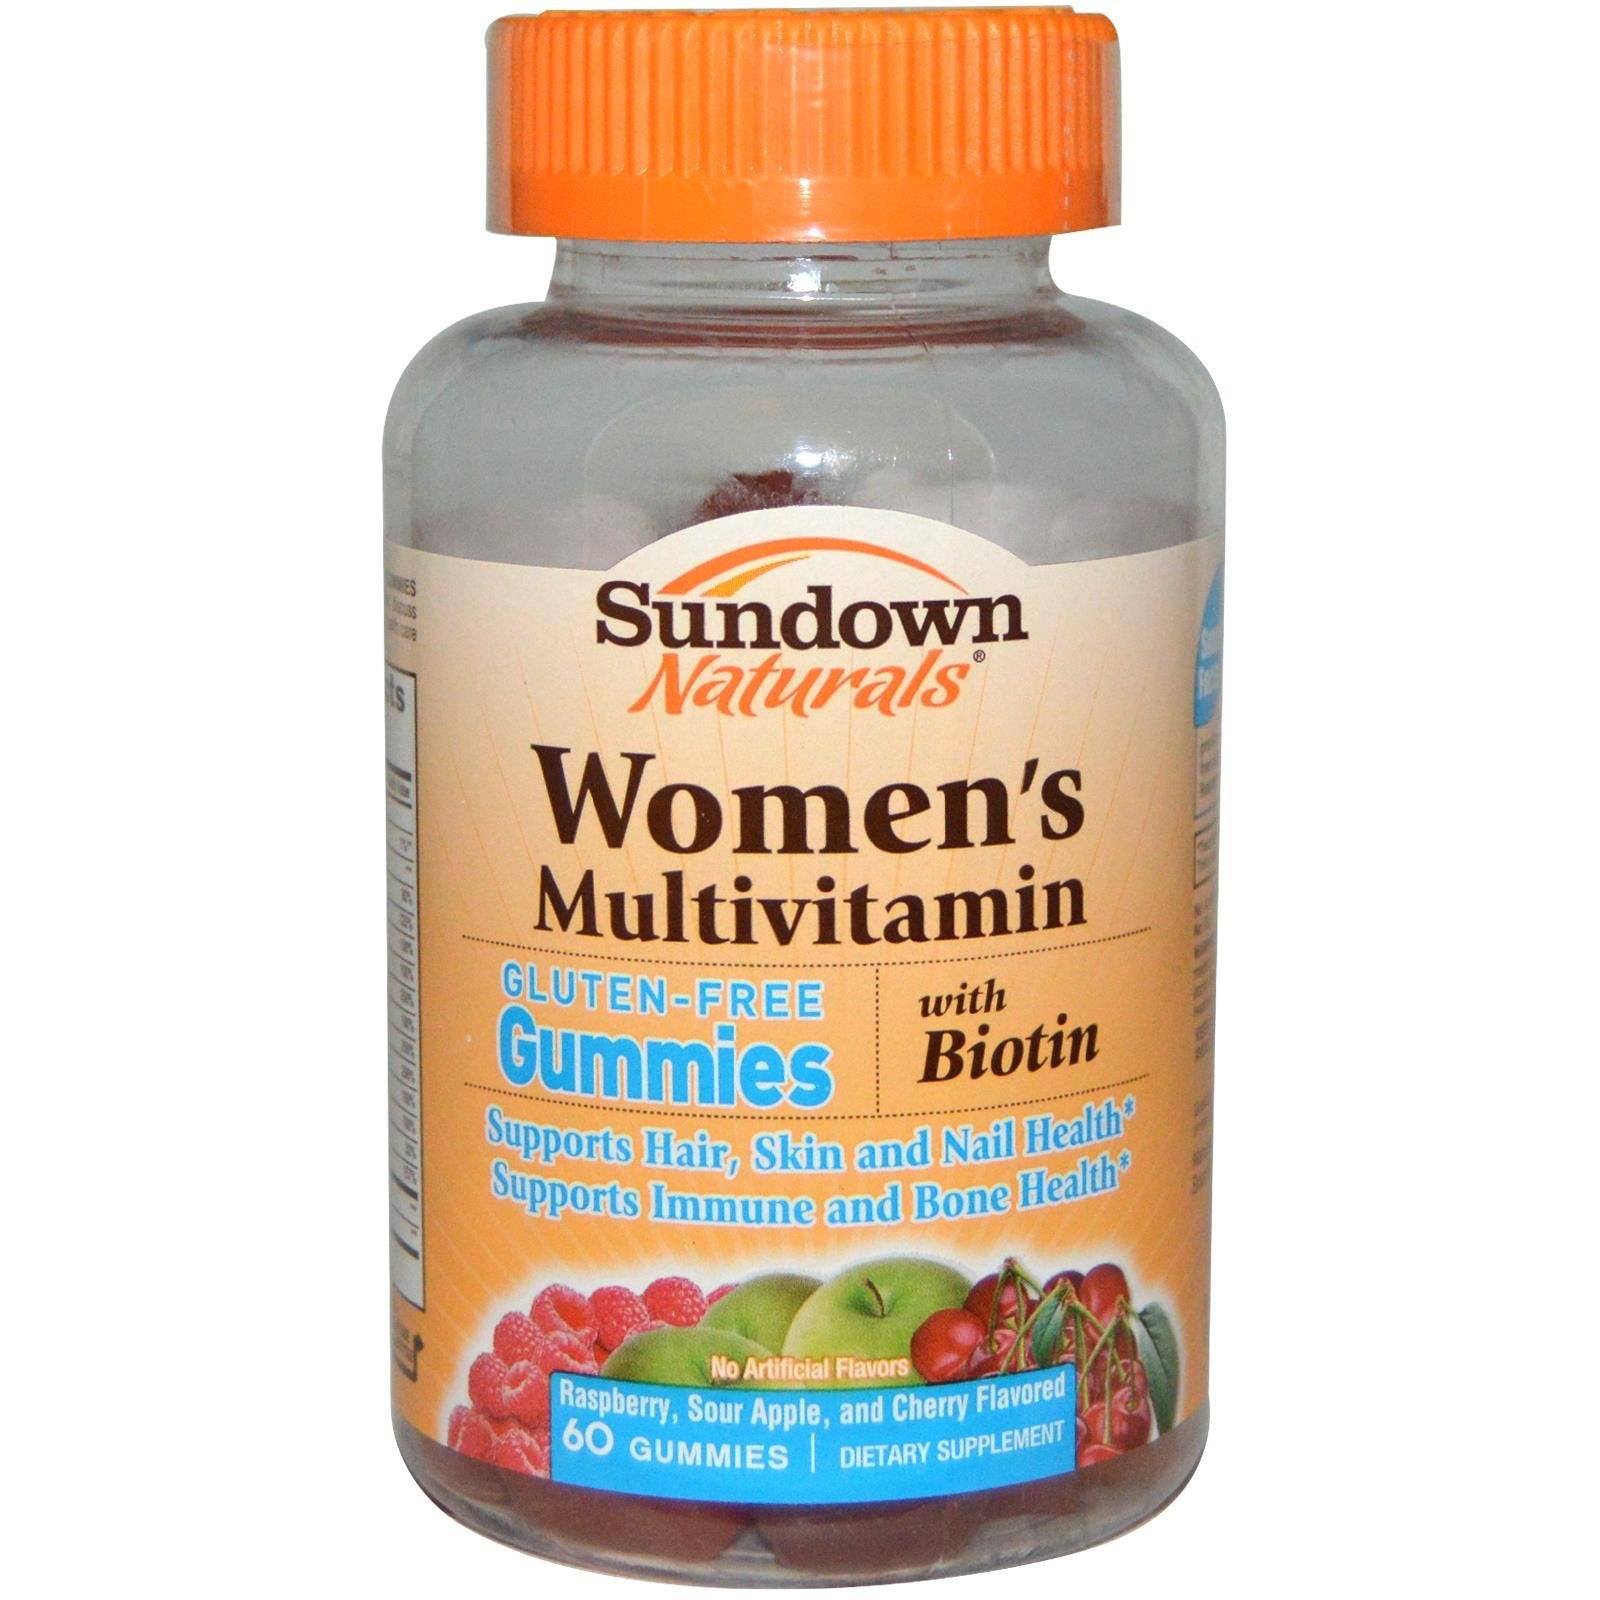 Sundown Naturals Women's Multivitamin with Biotin Gluten-Free Gummies - 60 count